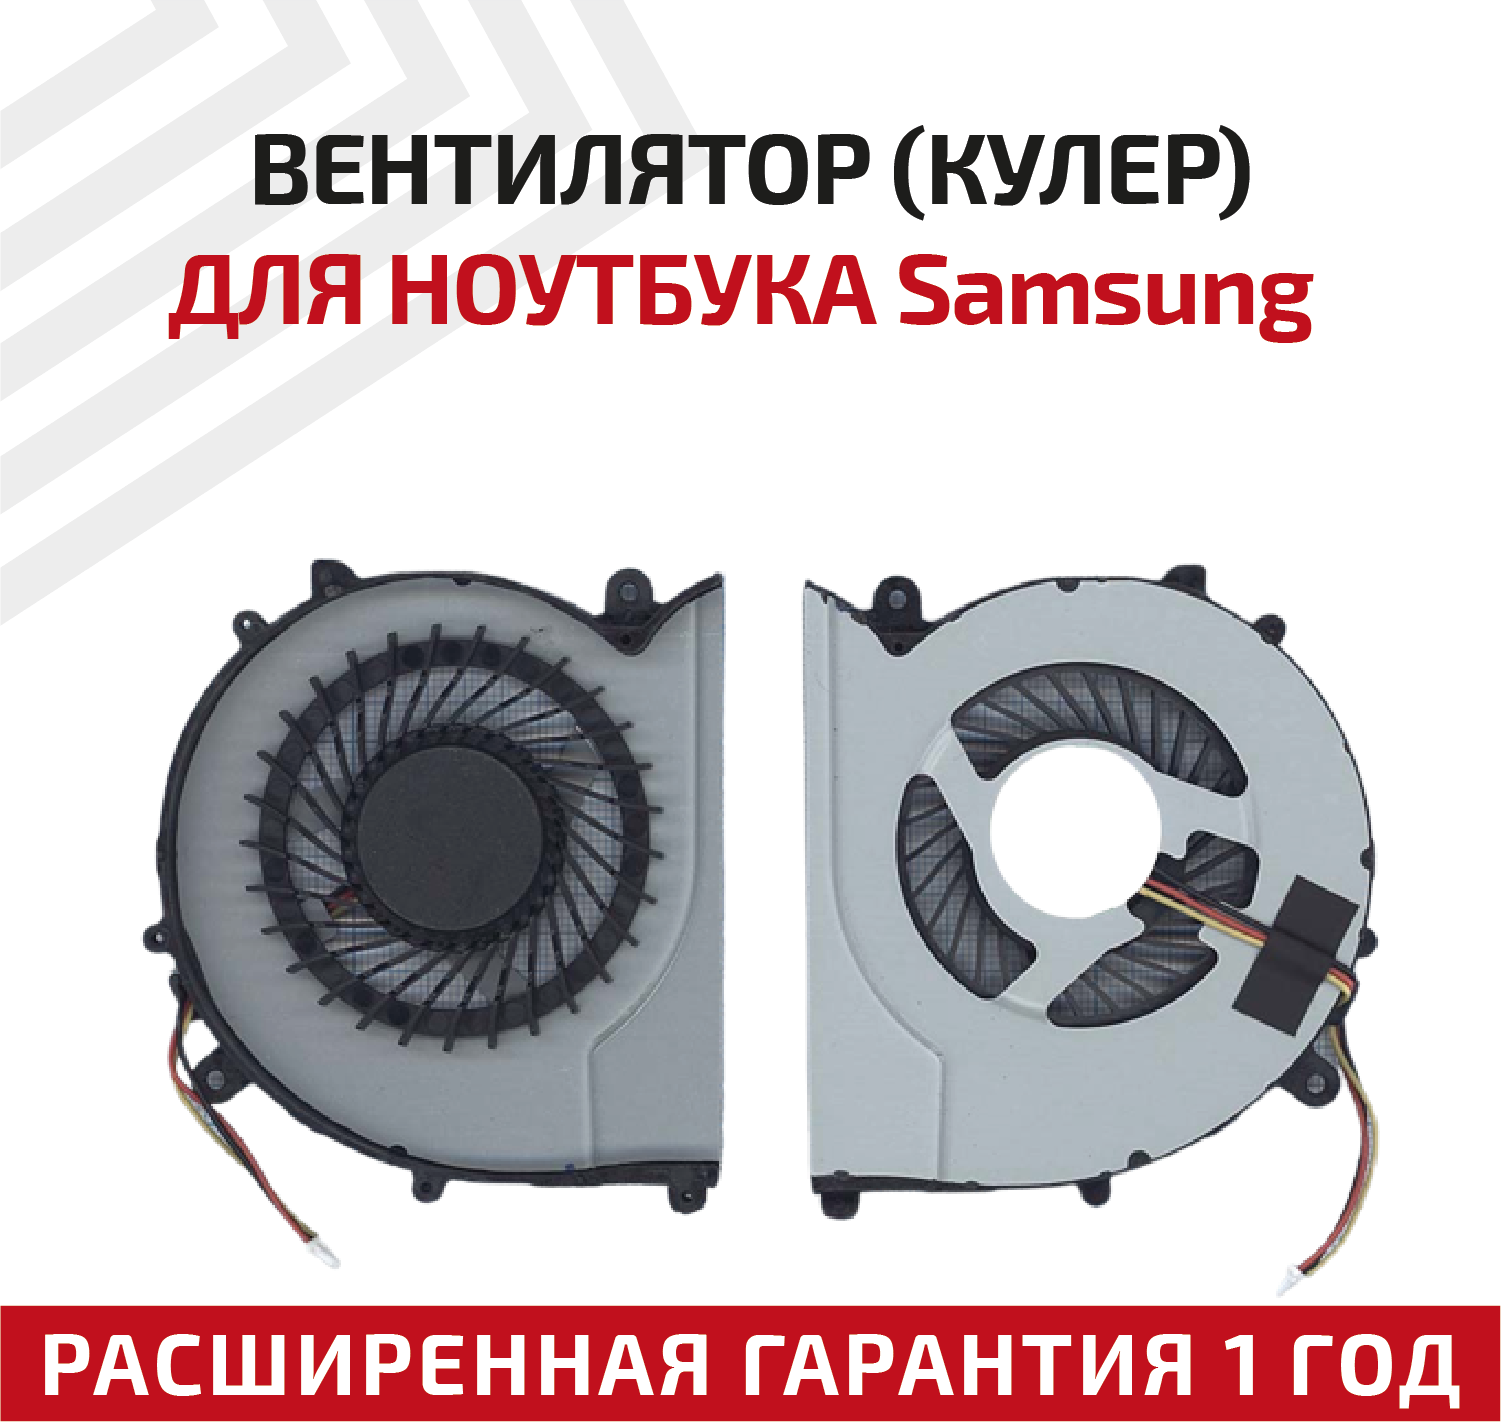 Вентилятор (кулер) для ноутбука Samsung 370R4E 370R5E 450R4V 450R5V 470R5E 510R5E VER 2